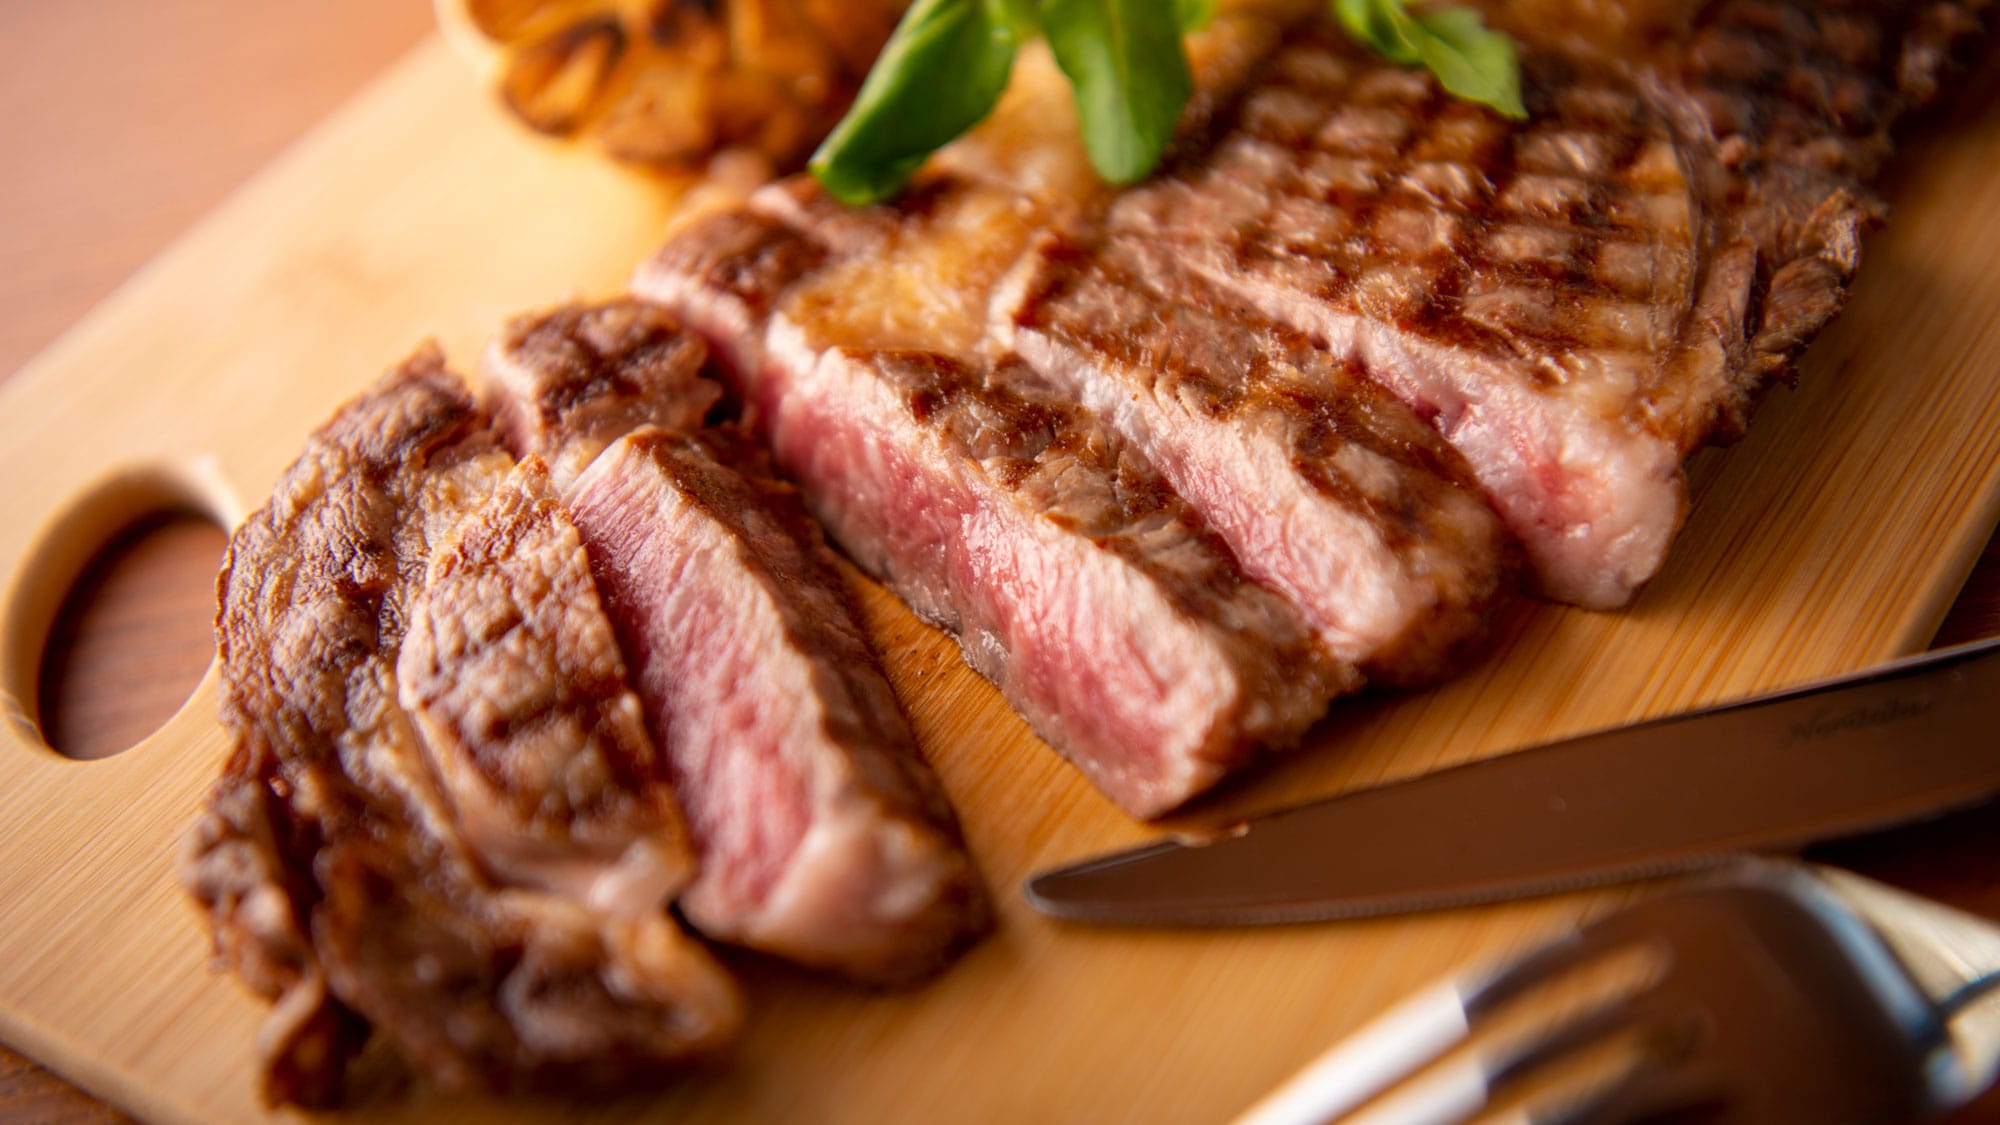 [อาหารจานหลัก - ตัวอย่างย่าง] สเต็กเนื้อสันนอกสมุนไพรโทคาจิ/เฉพาะเนื้อคุณภาพสูงเท่านั้นจึงจะย่างมีกลิ่นหอมสูง